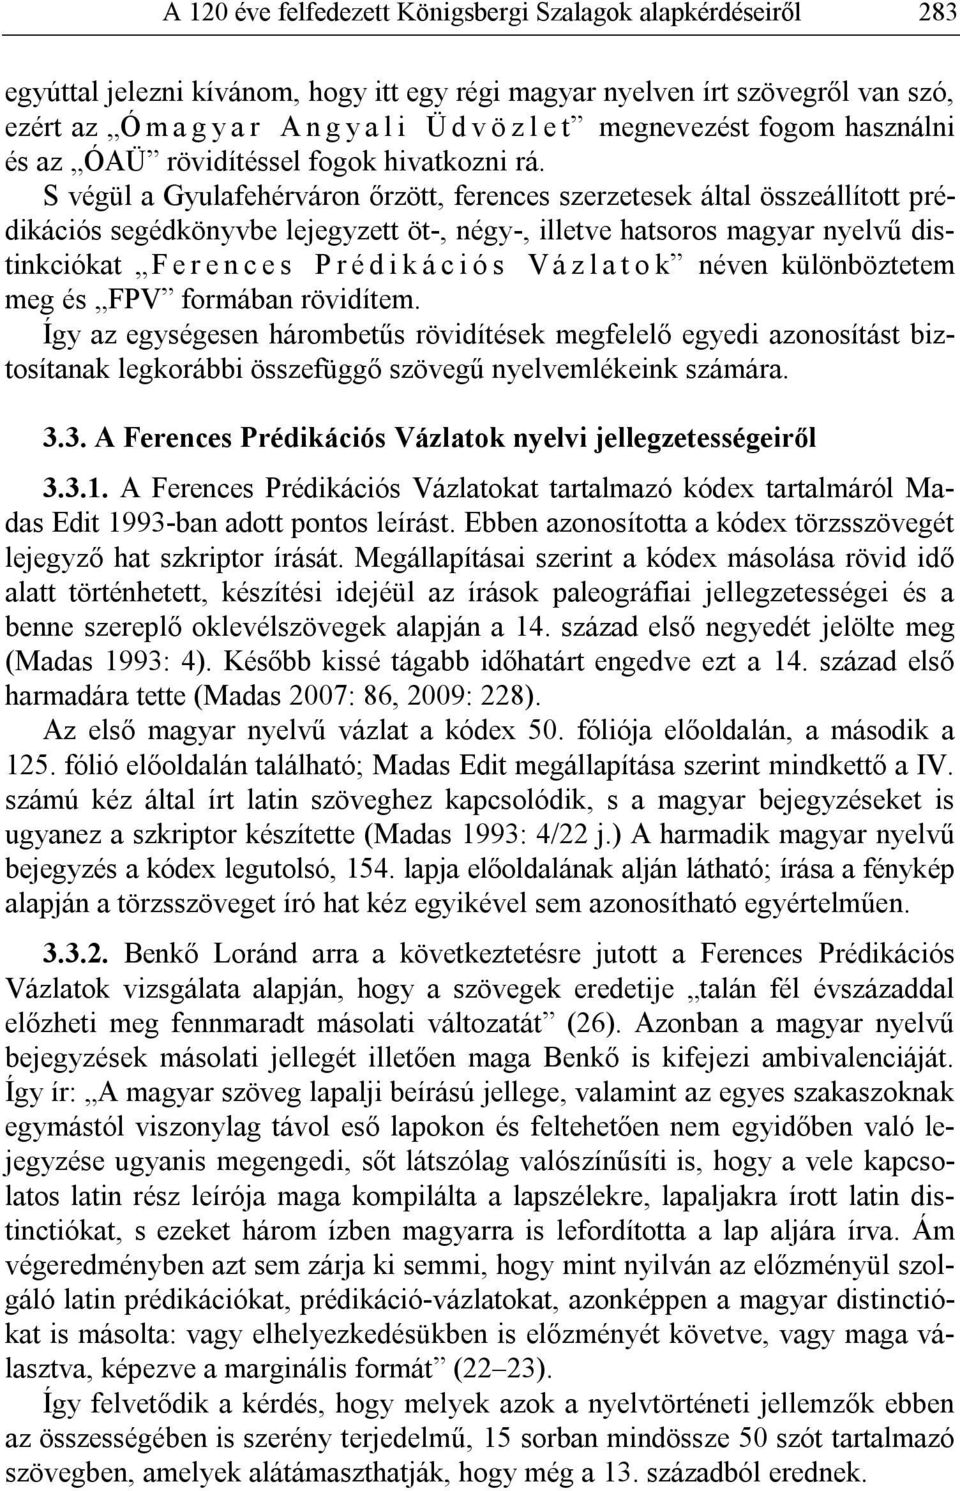 S végül a Gyulafehérváron őrzött, ferences szerzetesek által összeállított prédikációs segédkönyvbe lejegyzett öt-, négy-, illetve hatsoros magyar nyelvű distinkciókat F e r e n c e s P r é d i k á c